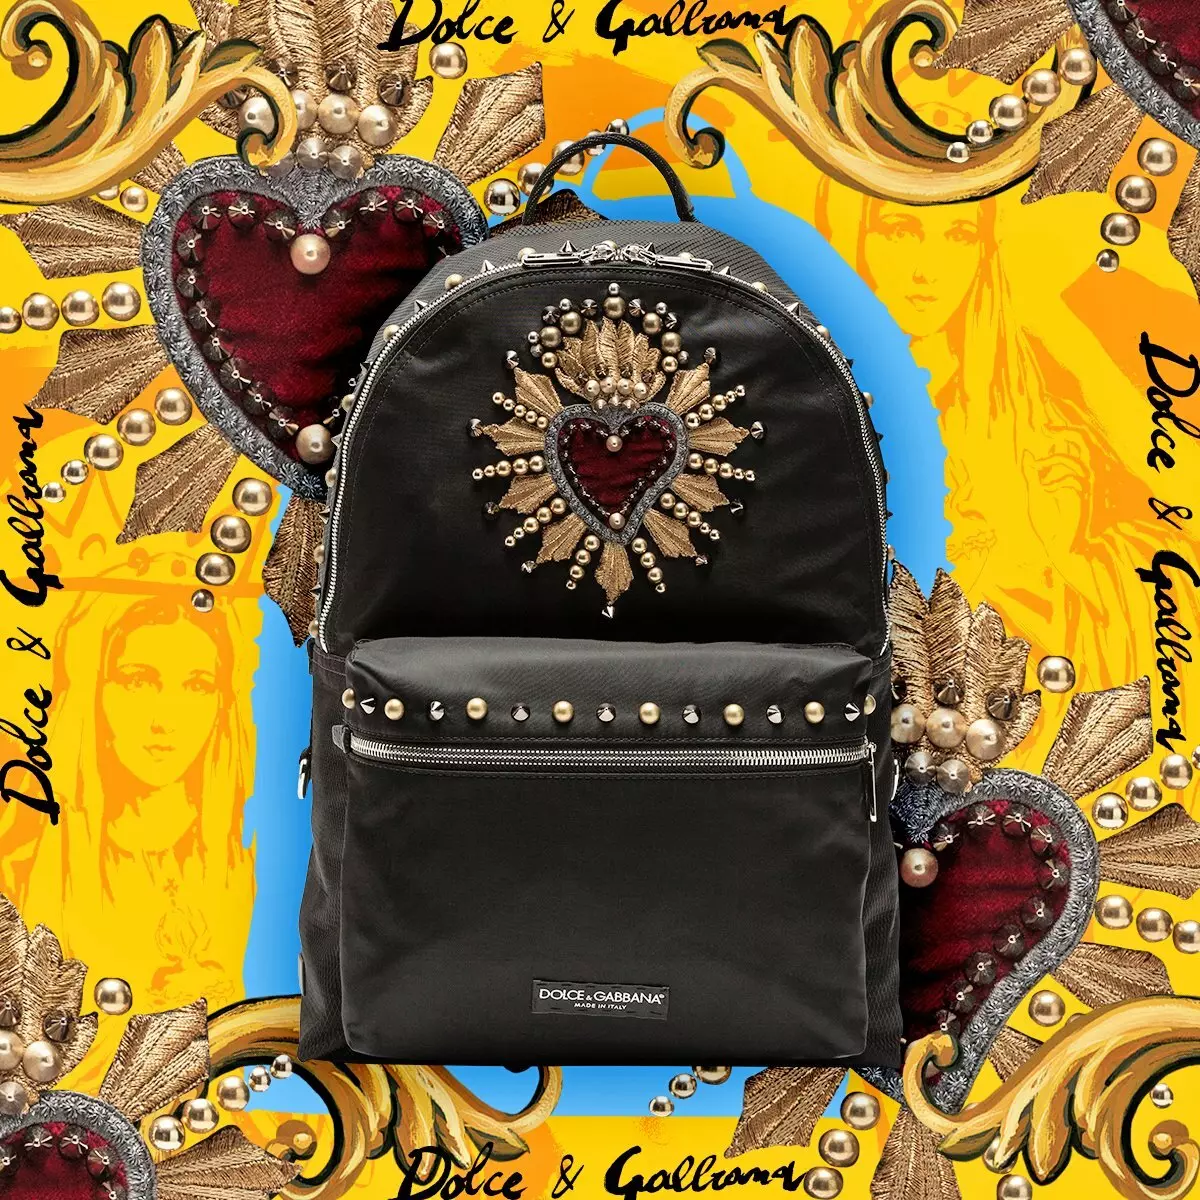 Dolce & Gabbana hátizsákok: Nő és férfi, fekete és piros, bőr hátizsákok táskák és egyéb modellek. Hogyan lehet megkülönböztetni az eredetit a másolatból? 2559_12